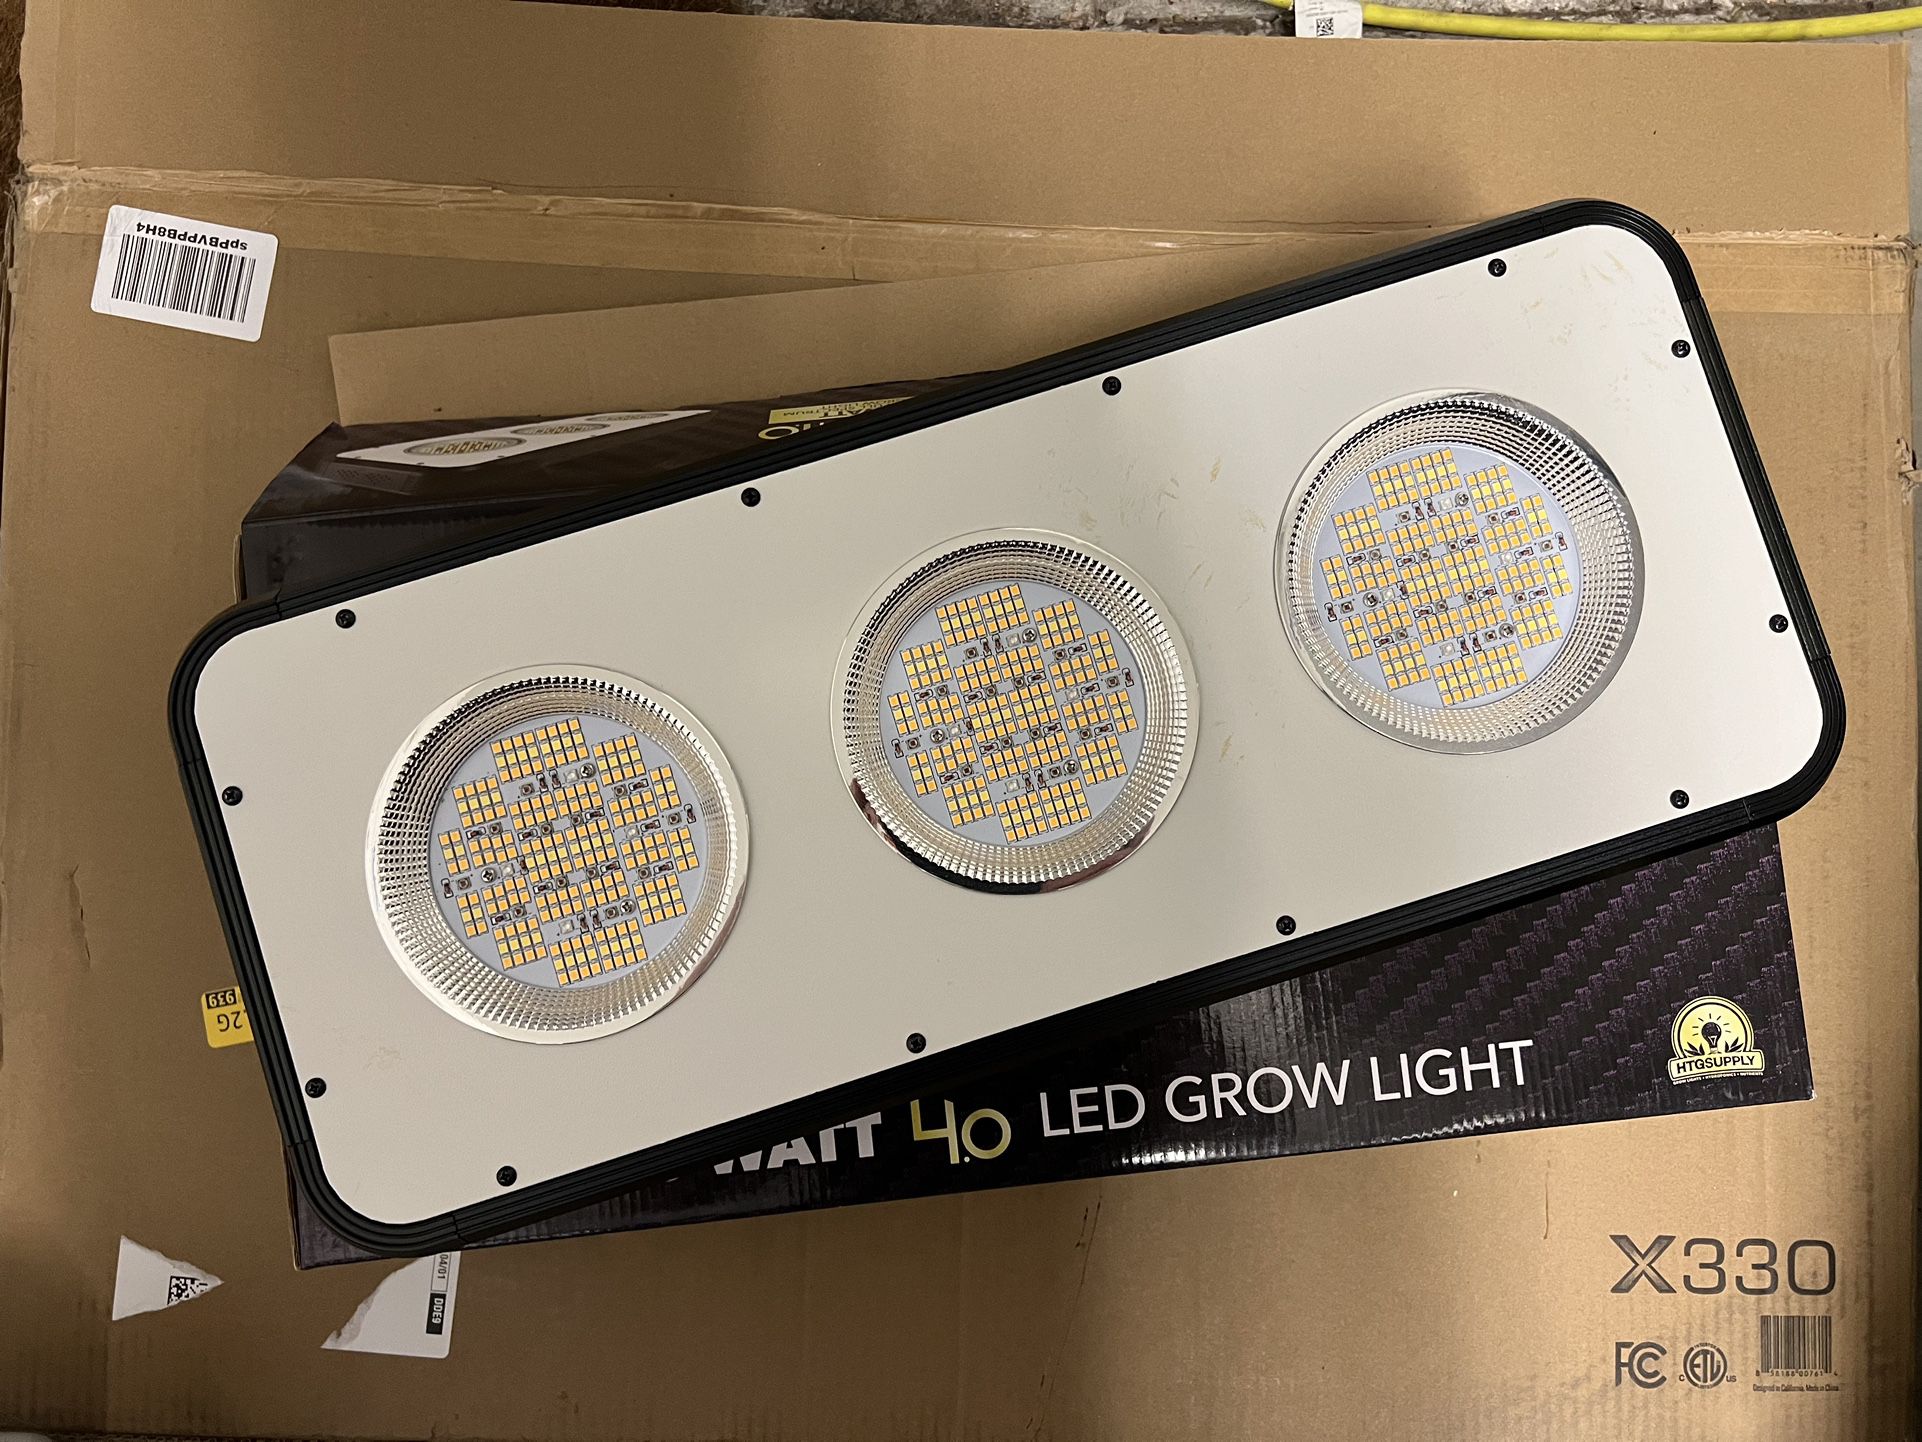 270 Watt LED Grow Light